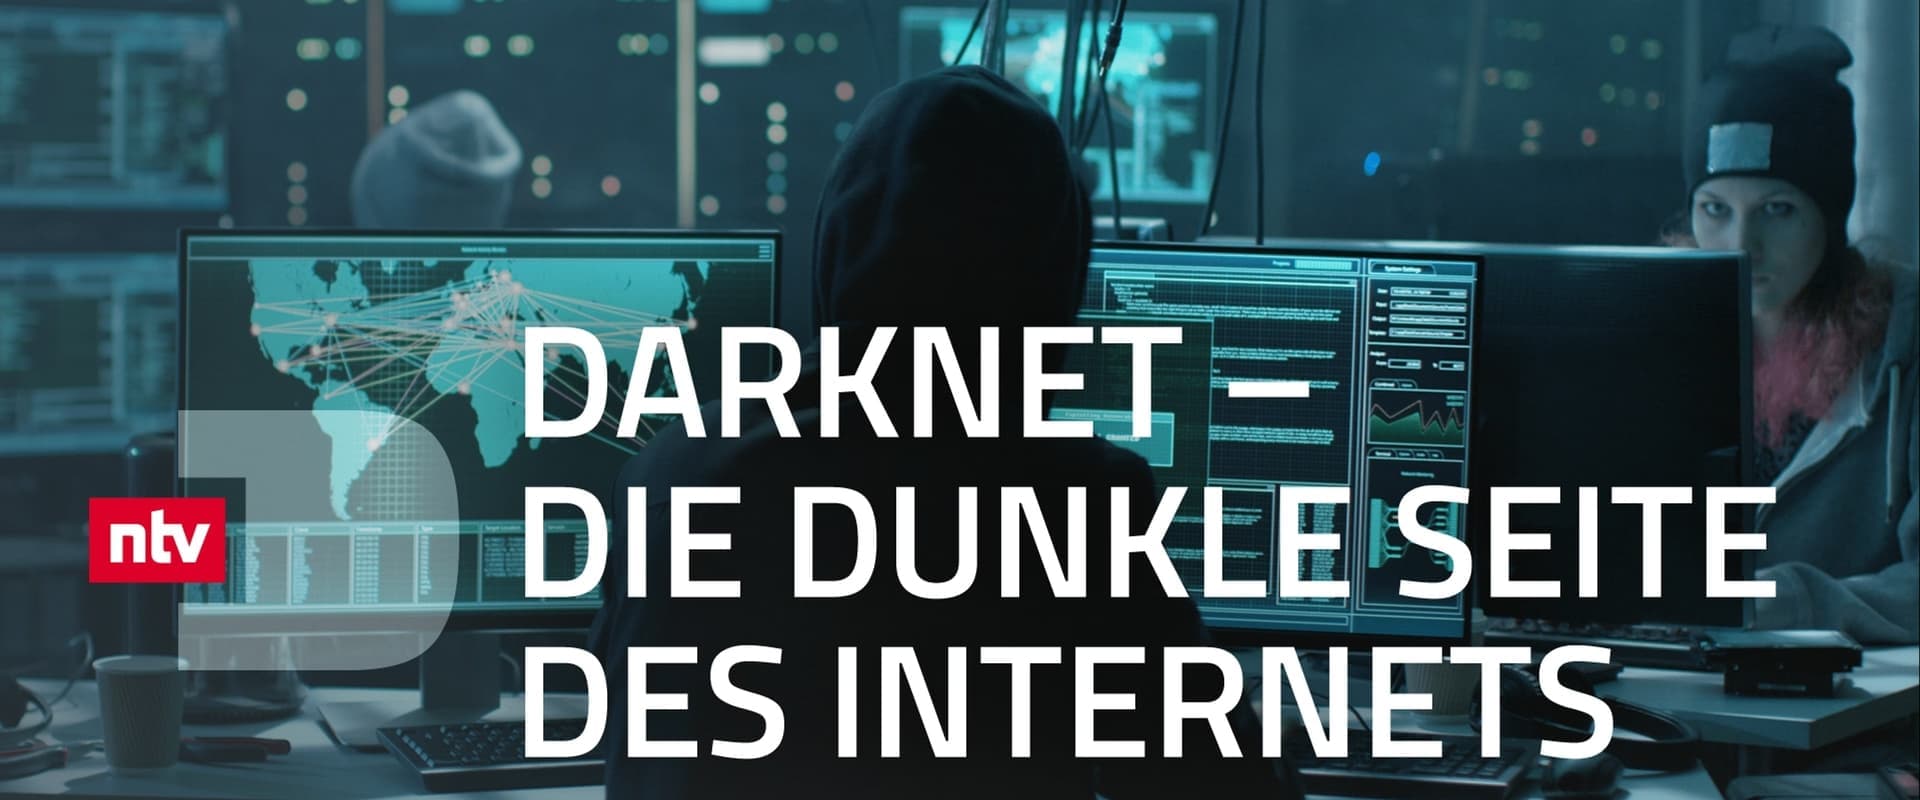 Darknet - Die dunkle Seite des Internets